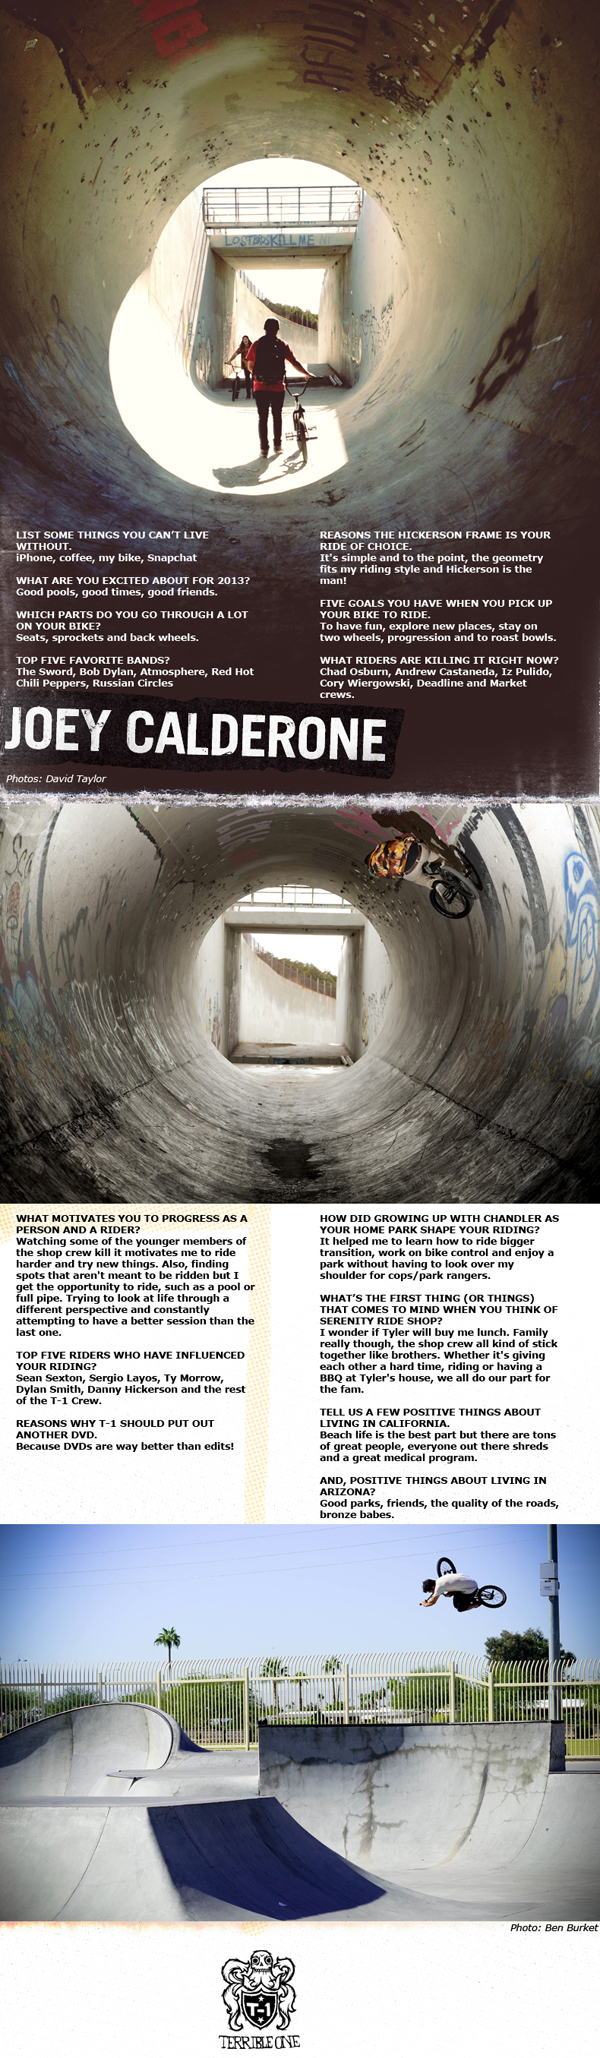 Joey Calderone BMX